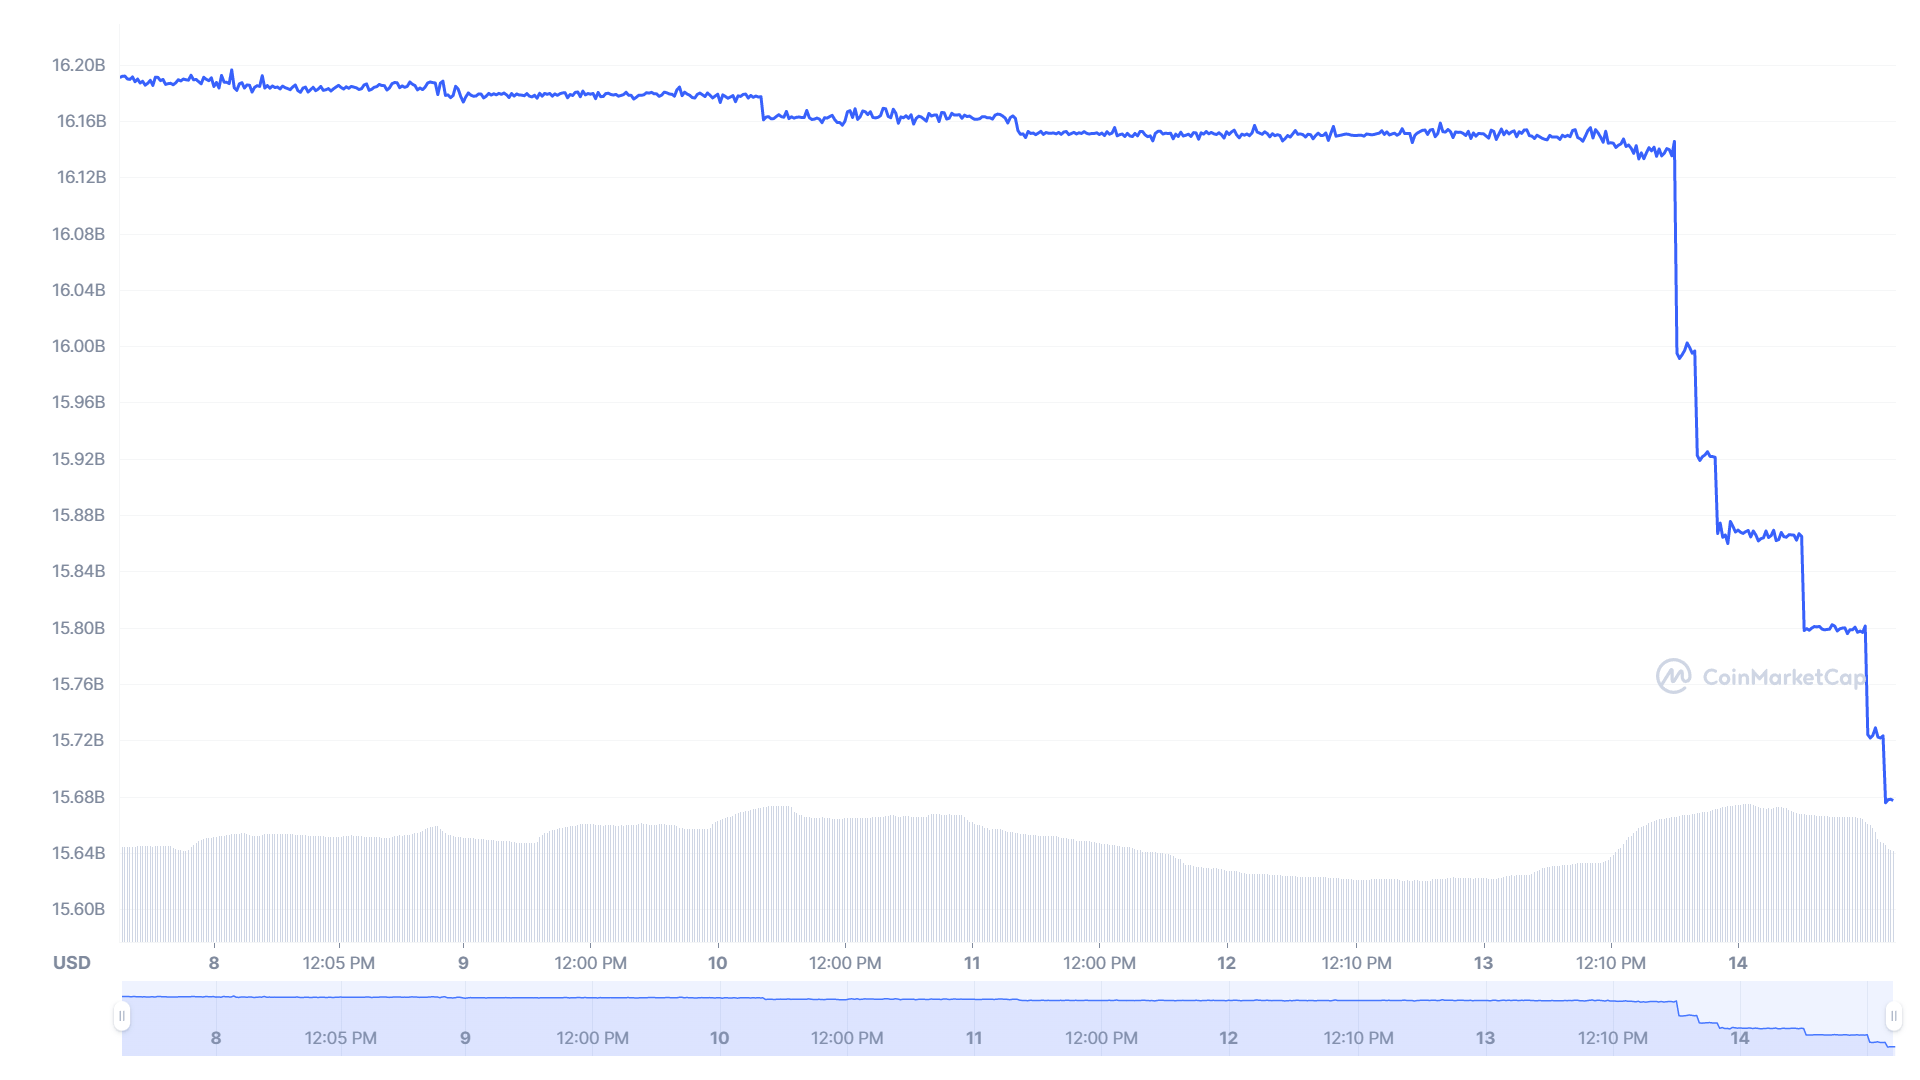 BUSD stablecoin market capitalization chart.